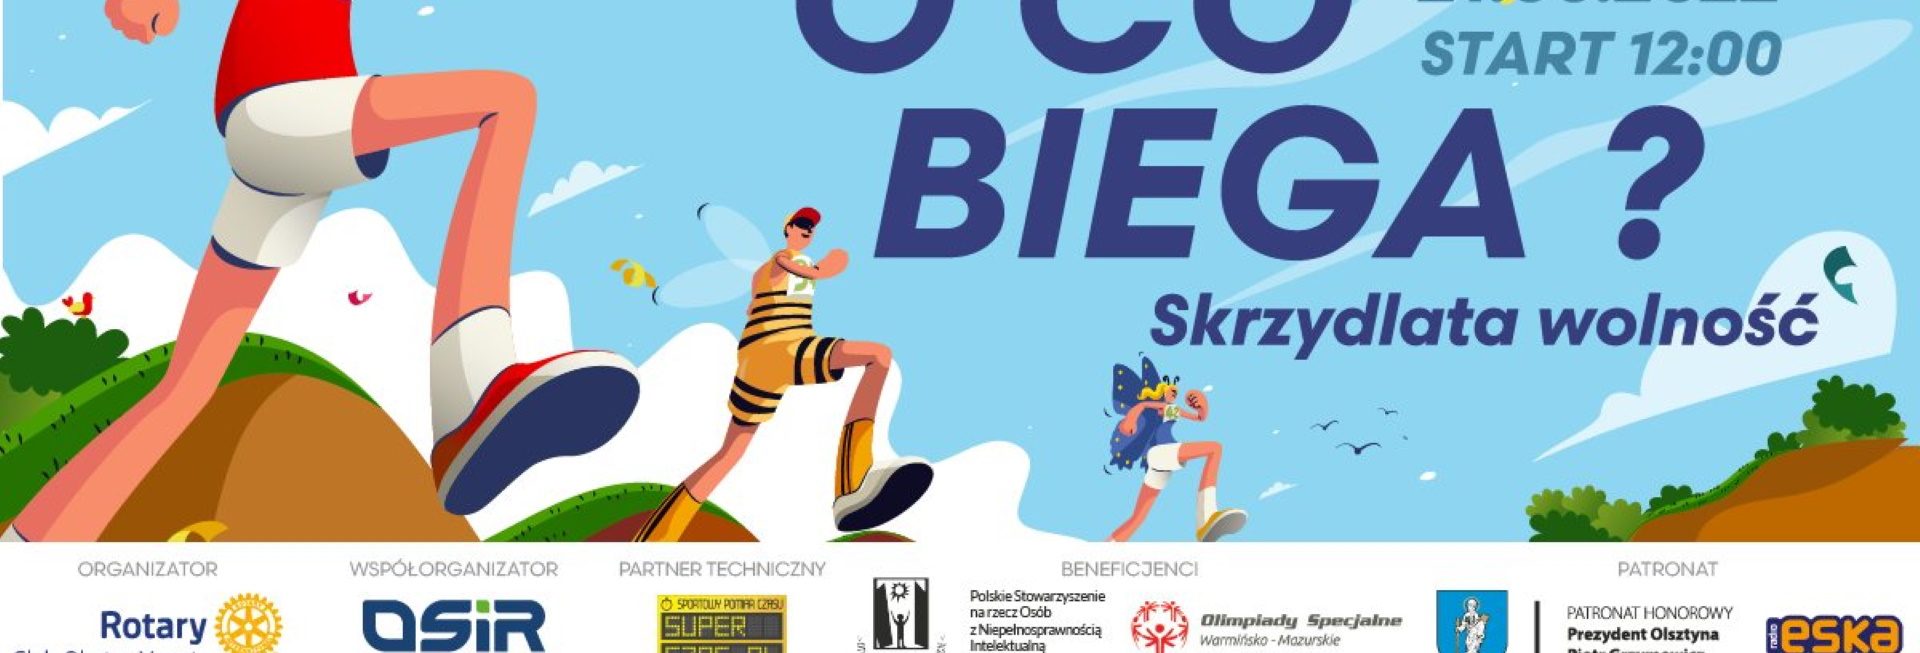 Plakat graficzny zapraszający do Olsztyna na Charytatywną Sztafetę Integracyjną „O CO BIEGA?” Olsztyn 2022.